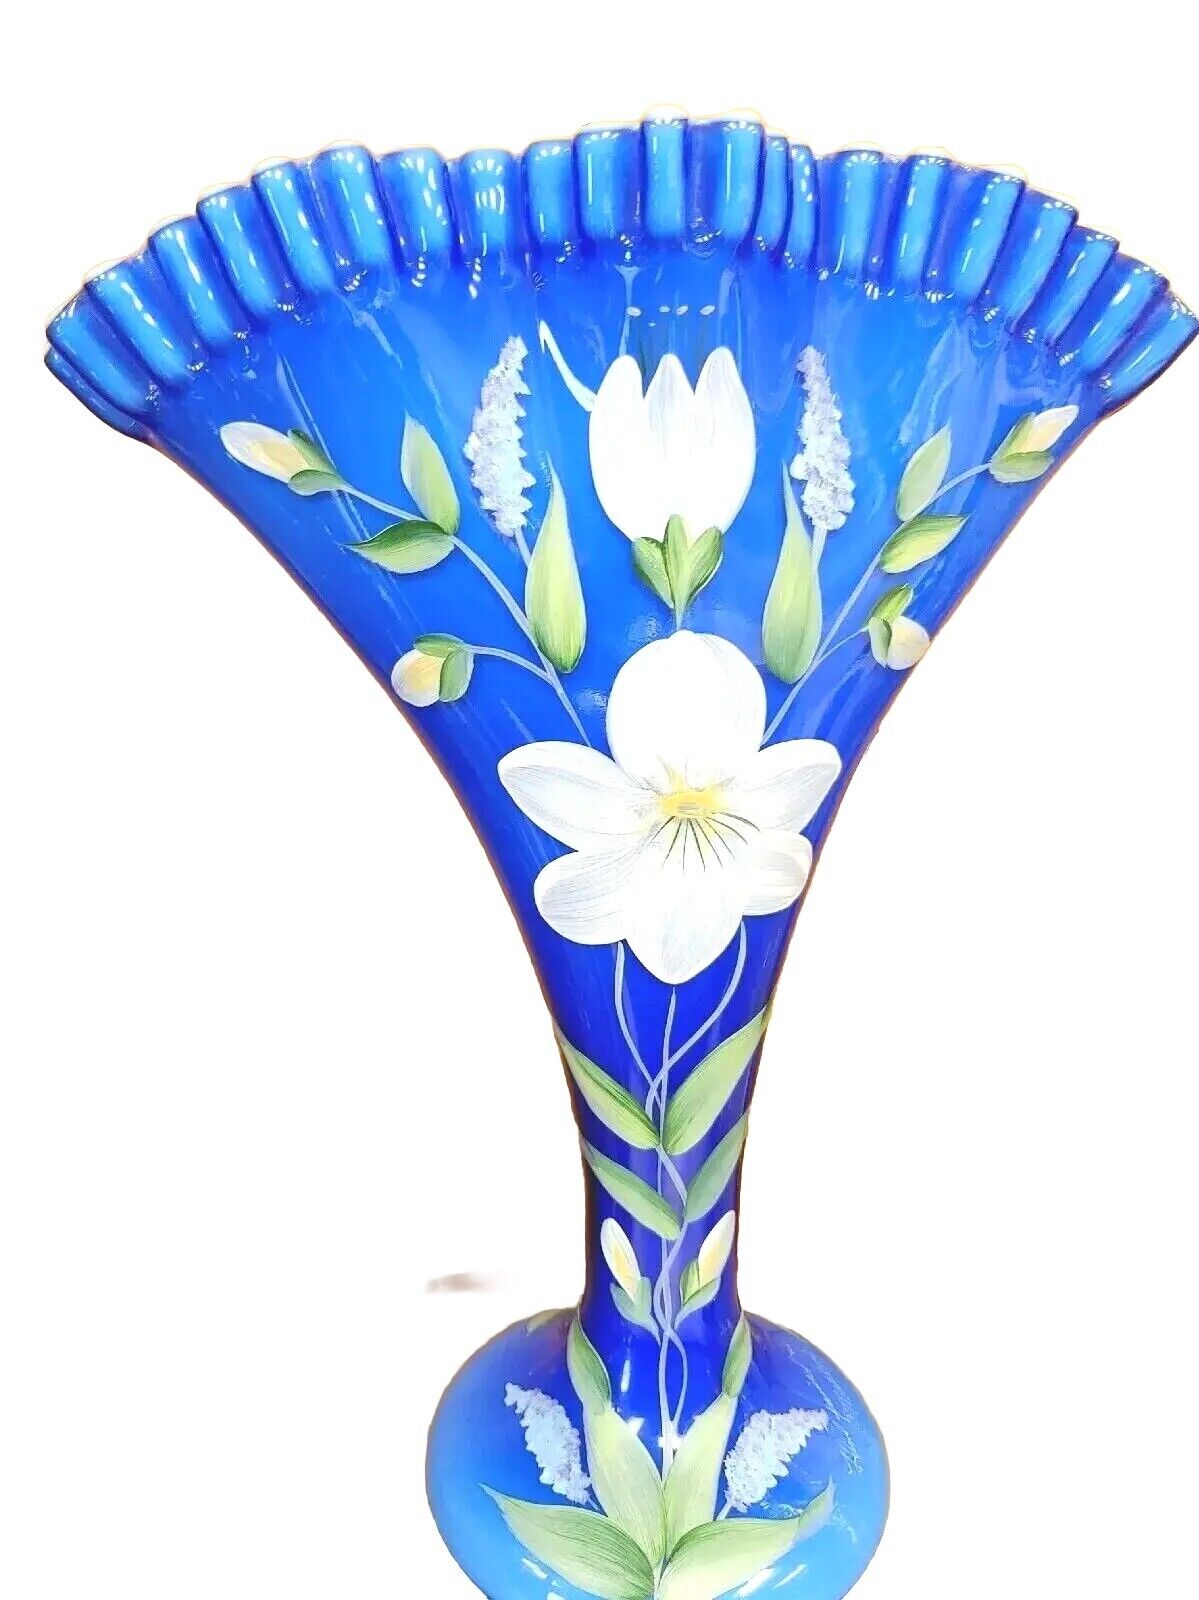 Fenton Vintage Fan Vase Large Cobalt Blue Glass Overlay Hand Painted Floral